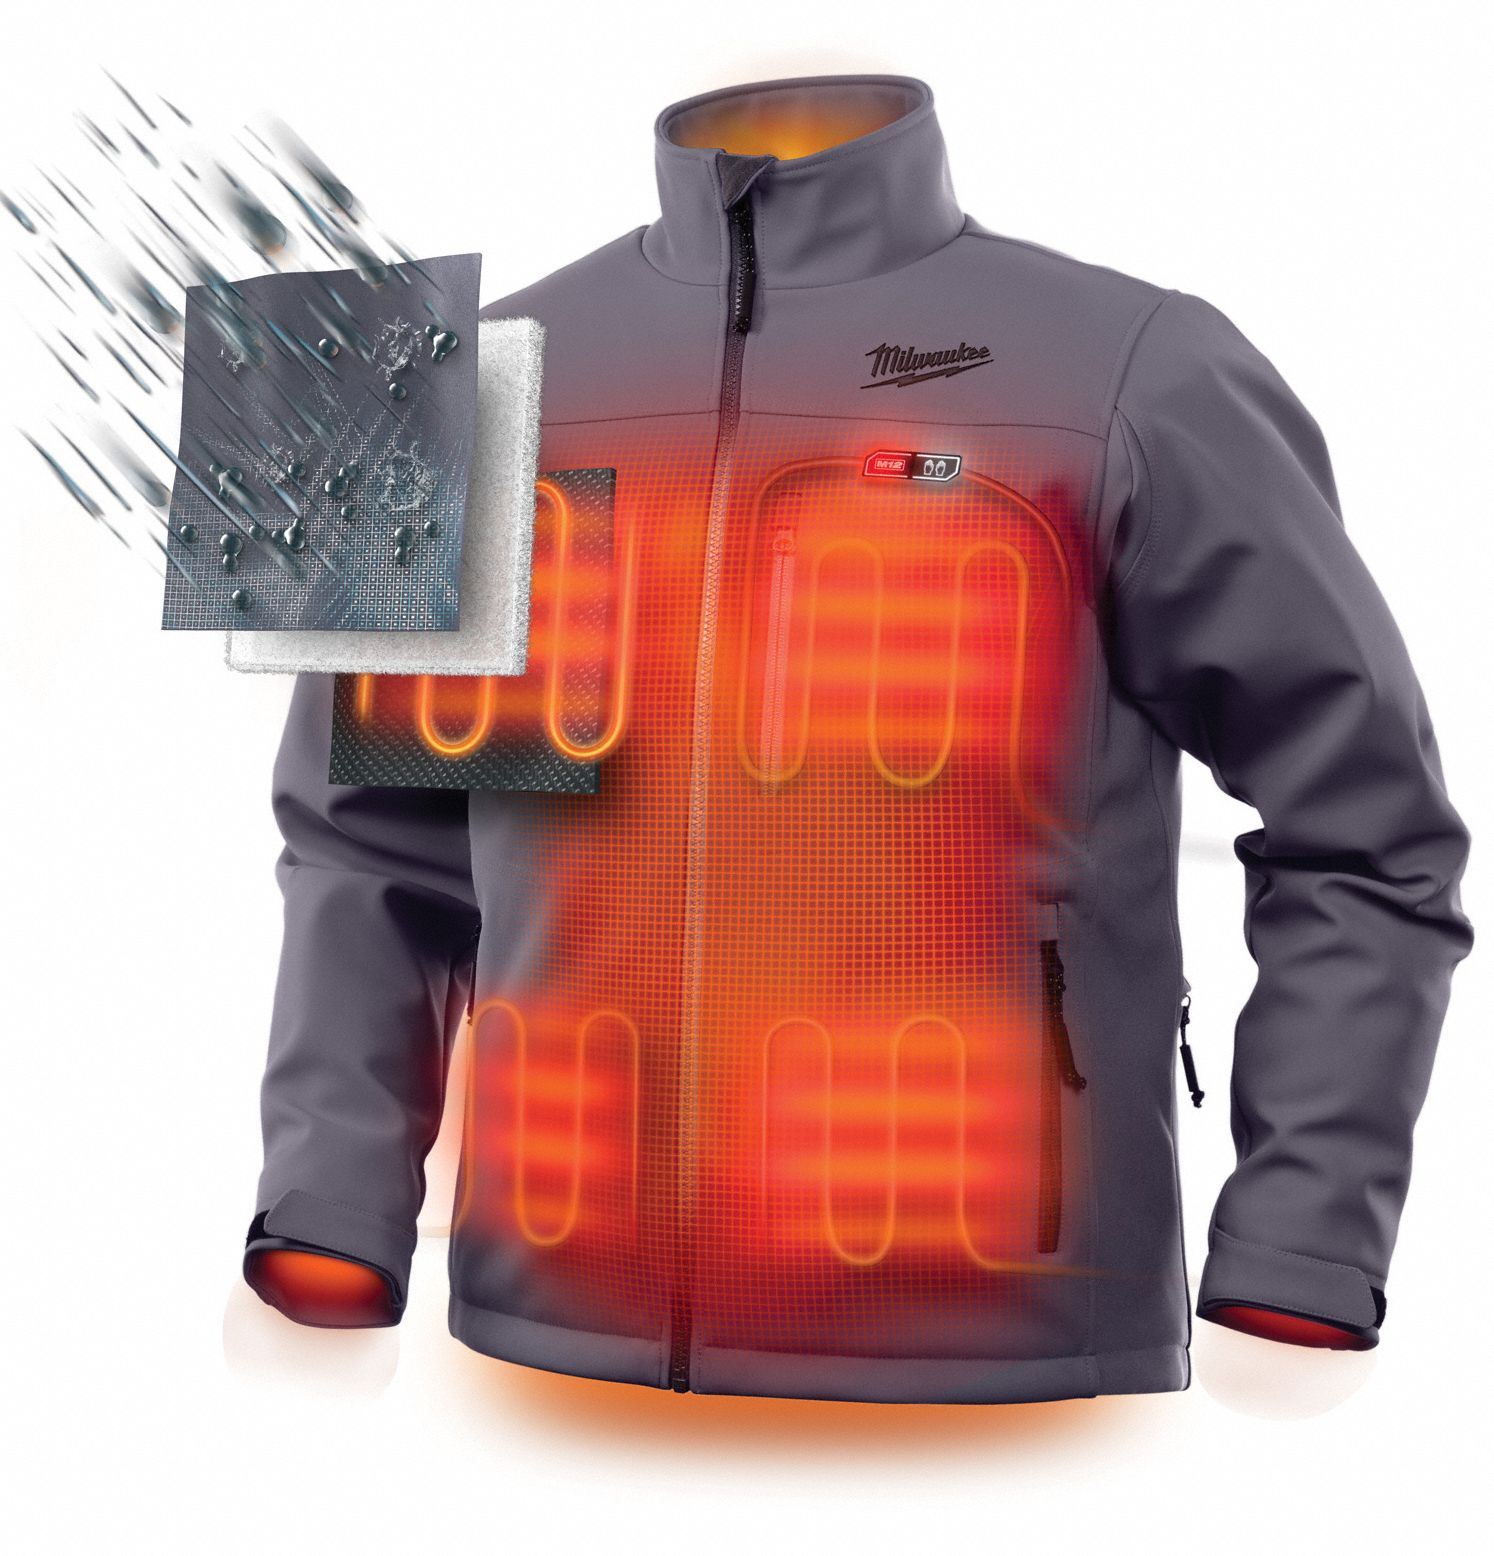 milwaukee-heated-jacket-kit-49eh04-201g-21l-grainger